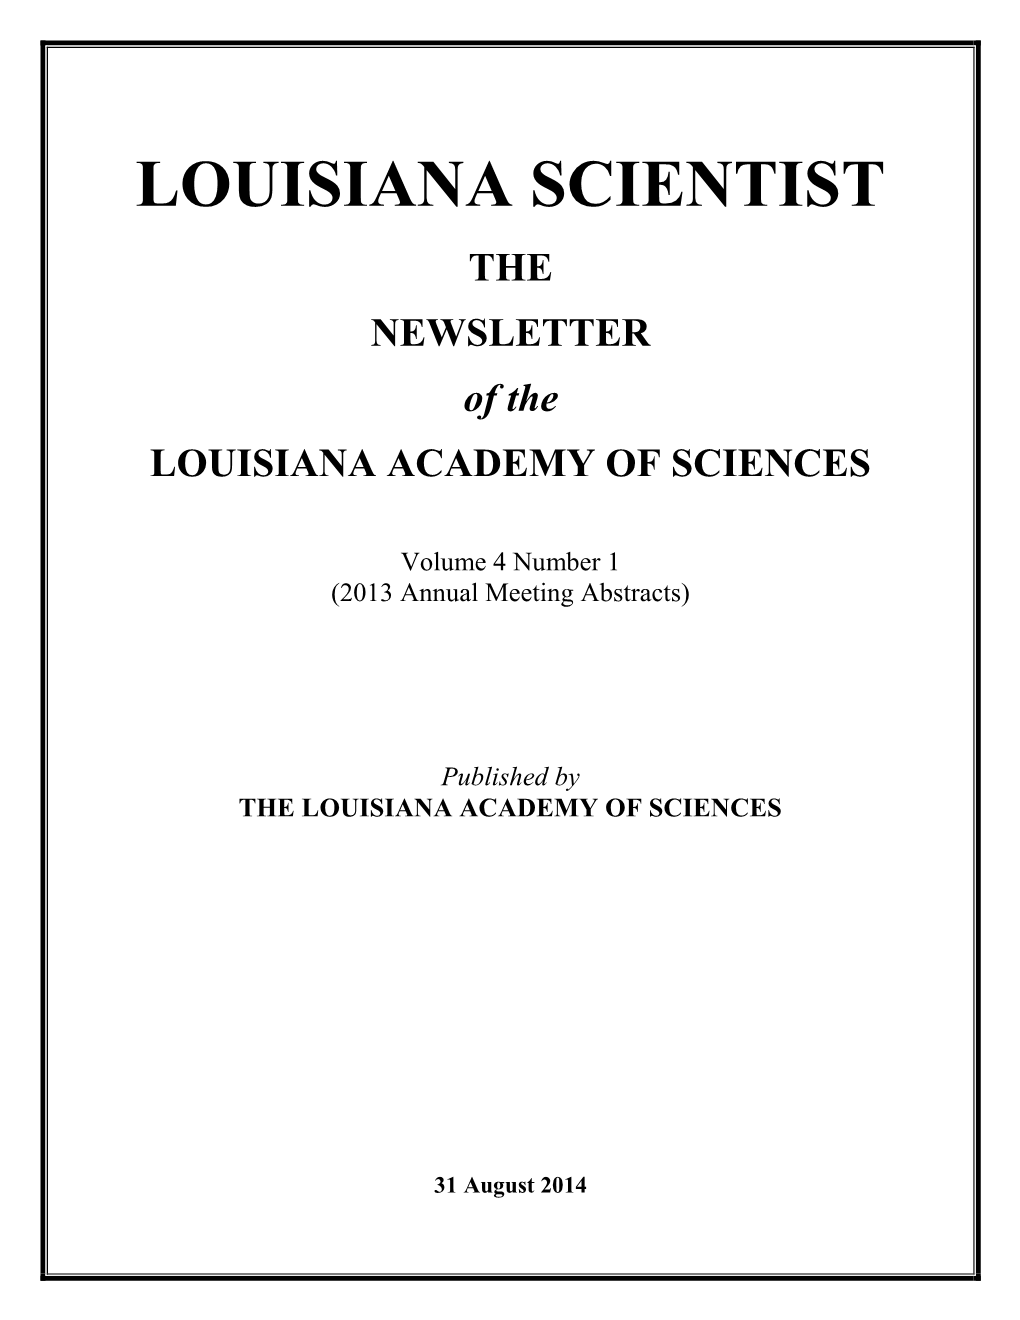 LOUISIANA SCIENTIST Vol. 4 No. 1